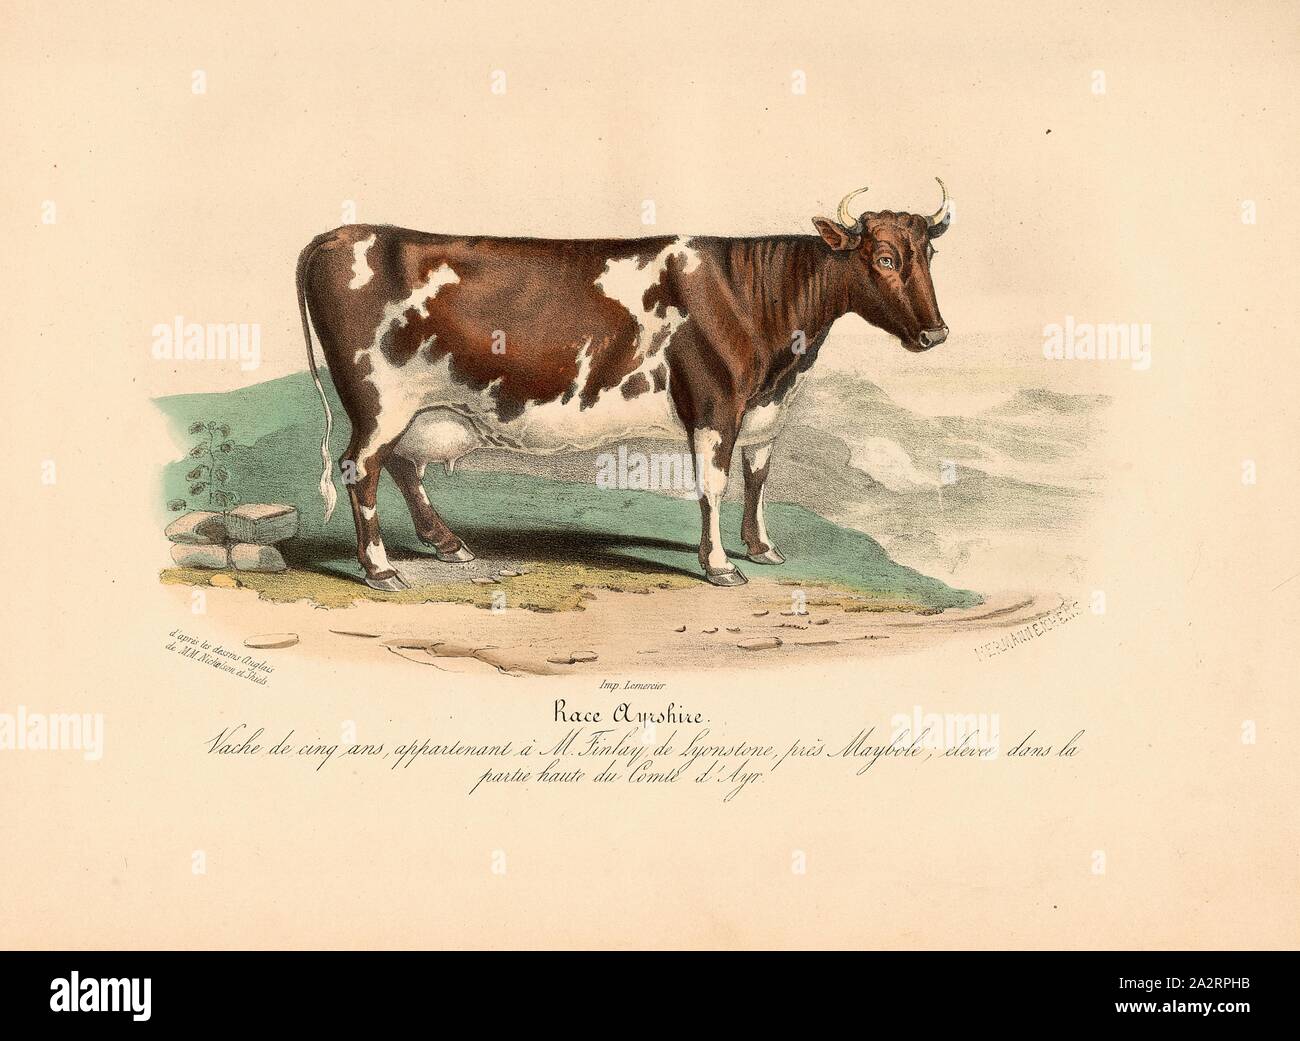 Ayrshire breed. Five-year-old cow, owned by Mr. Finlay of Lyonstone, near Maybole ..., Cattle breed from Great Britain, signed: d'après les dessins Anglais de M.M. Nicholson et Shiels; Imp. Lemercier; Hermann Eichens, Pl. 13, p. 98, Nicholson, Francis (del.); Shiels, William (del.); Eichens, Hermann (lith.); Imprimerie Lemercier (imp.), 1846, David Low; Royer: Histoire naturelle-agricole des animaux domestiques de l'Europe: races de la Grande-Bretagne. Paris: aux Bureaux du Moniteur de la Propriété, et chez les principaux Libraires, 1846 Stock Photo